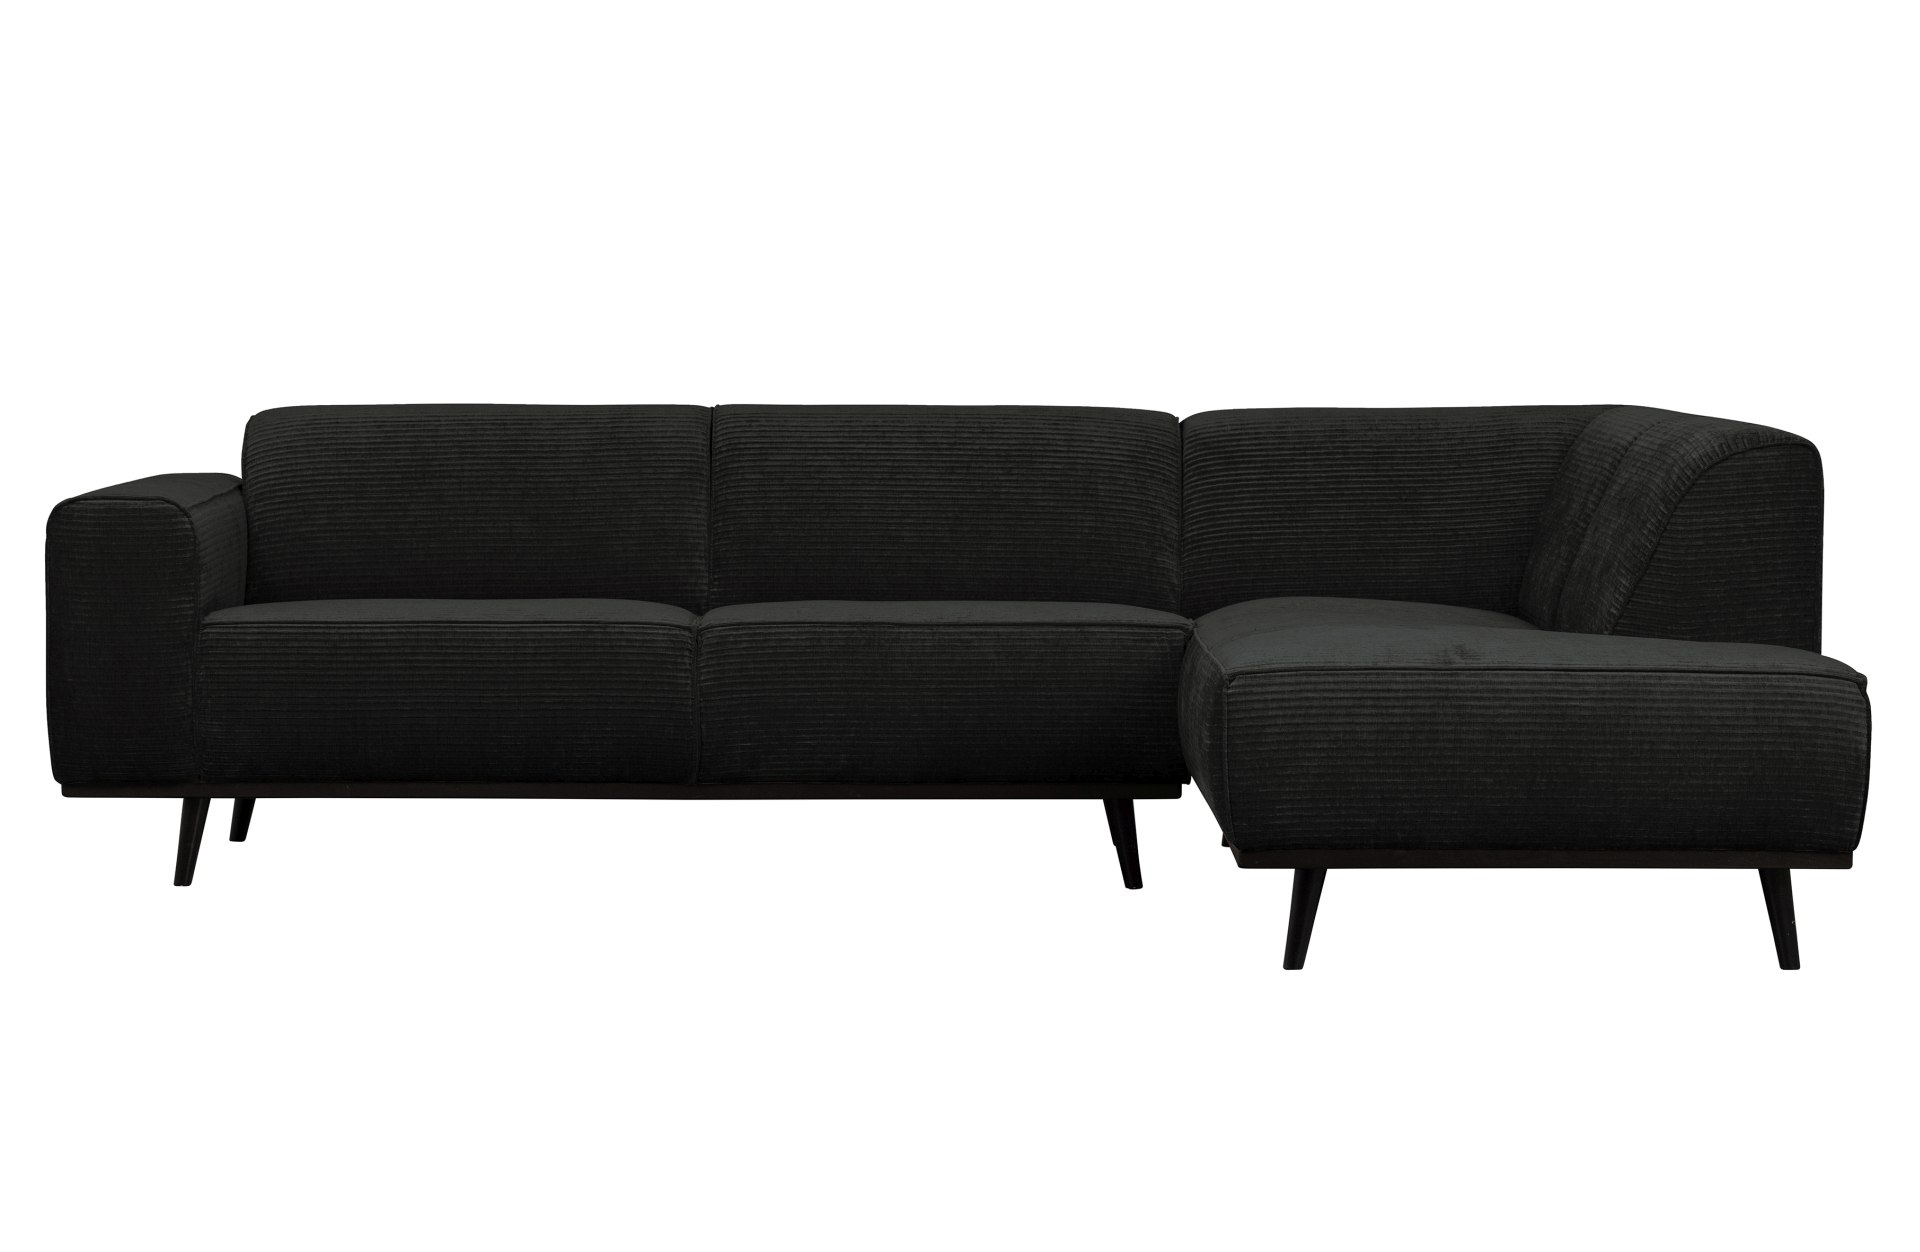 Das Ecksofa Statement überzeugt mit seinem modernen Design. Gefertigt wurde es aus gewebten Jacquard, welches einen Graphit Farbton besitzen. Das Gestell ist aus Birkenholz und hat eine schwarze Farbe. Das Sofa hat eine Breite von 274 cm.